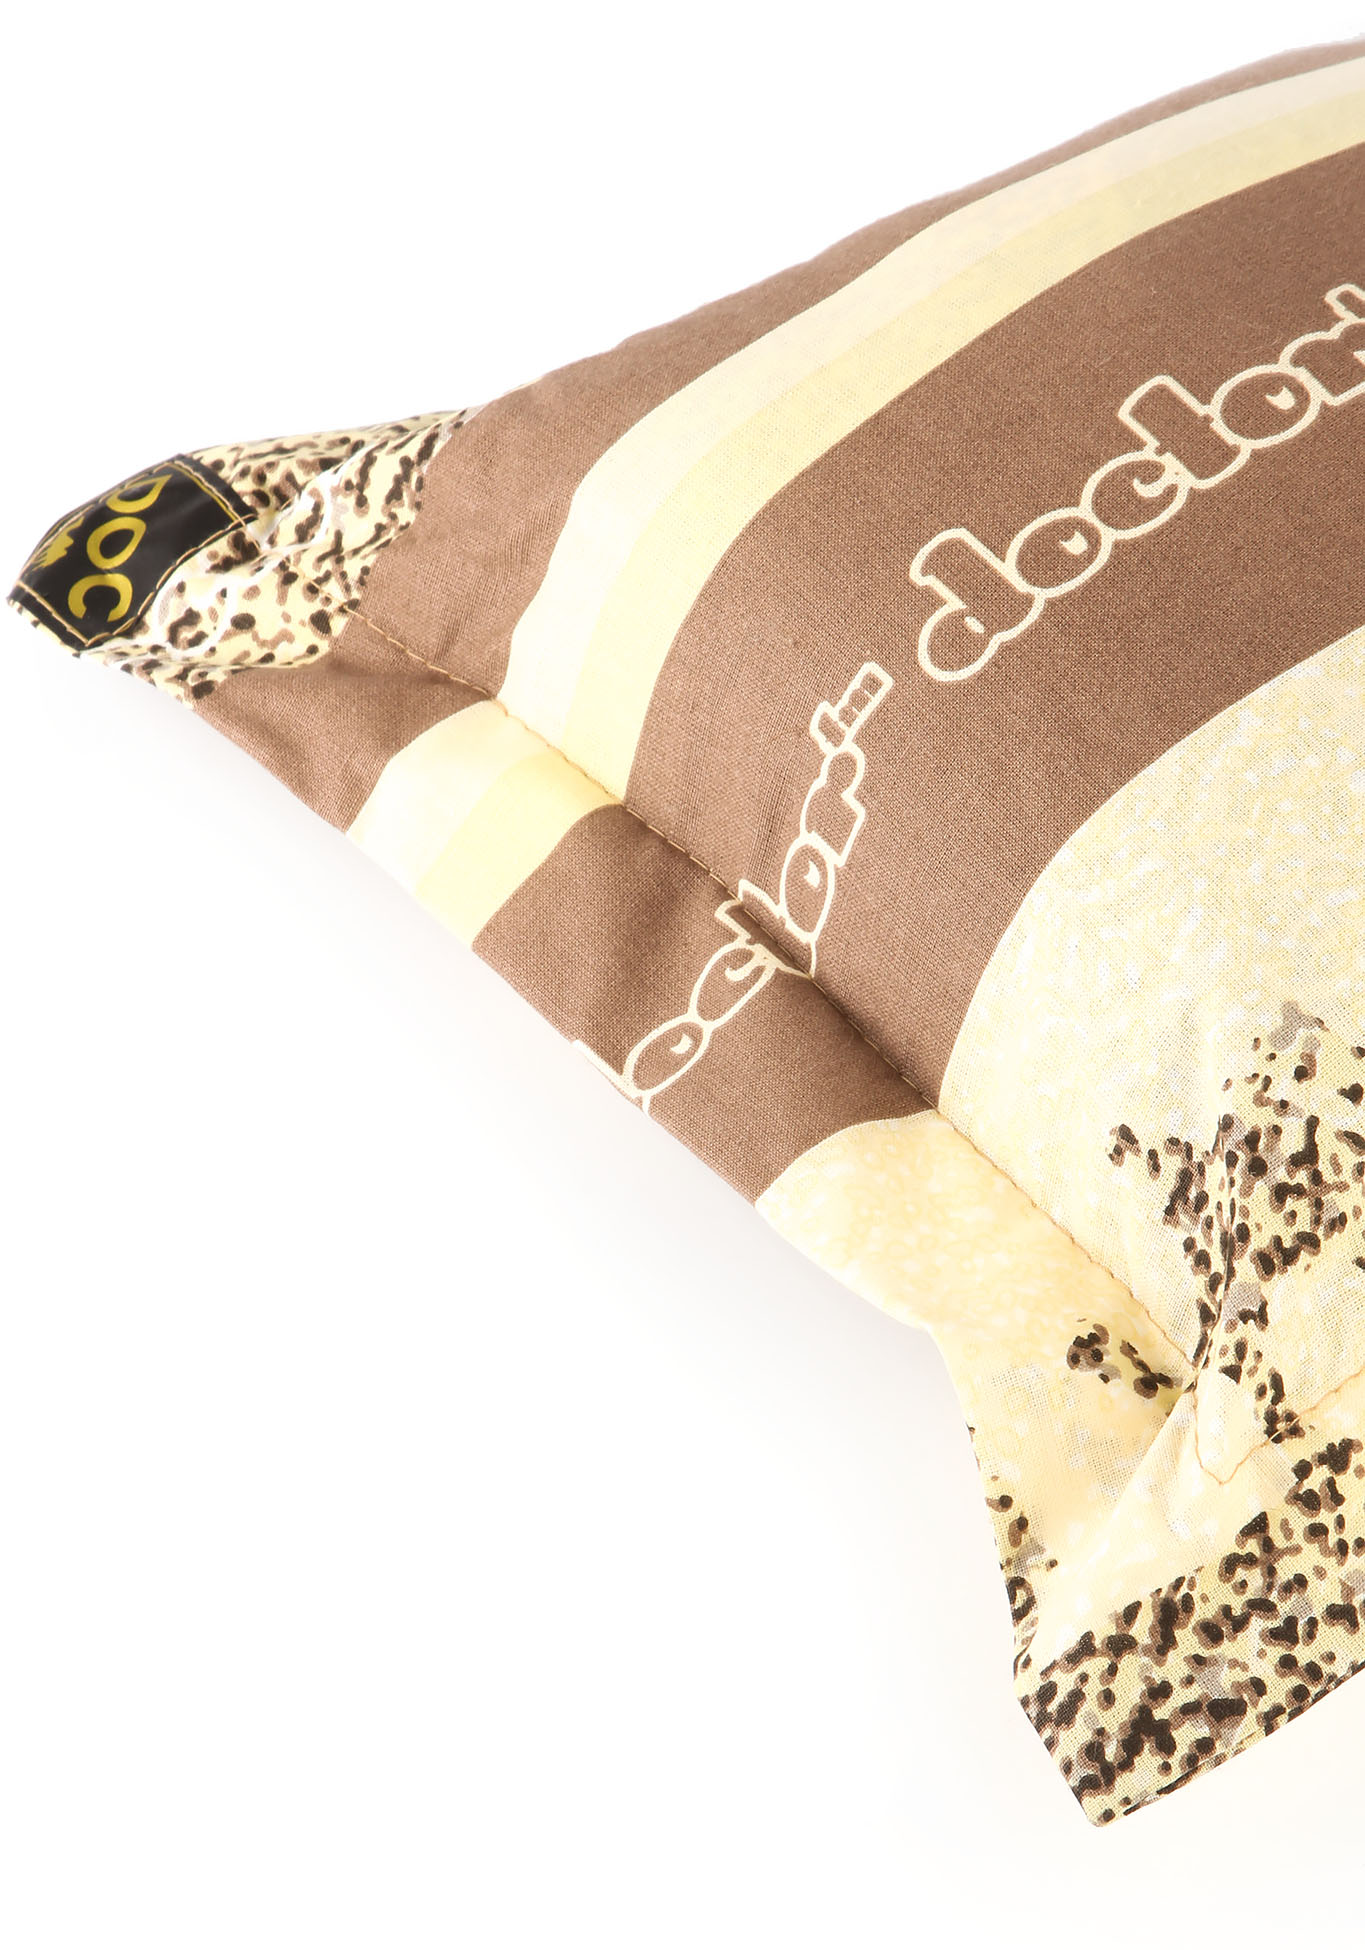 Аромо-подушка с целебными травами Центр Доктор, цвет коричневый, размер 30*30 - фото 2